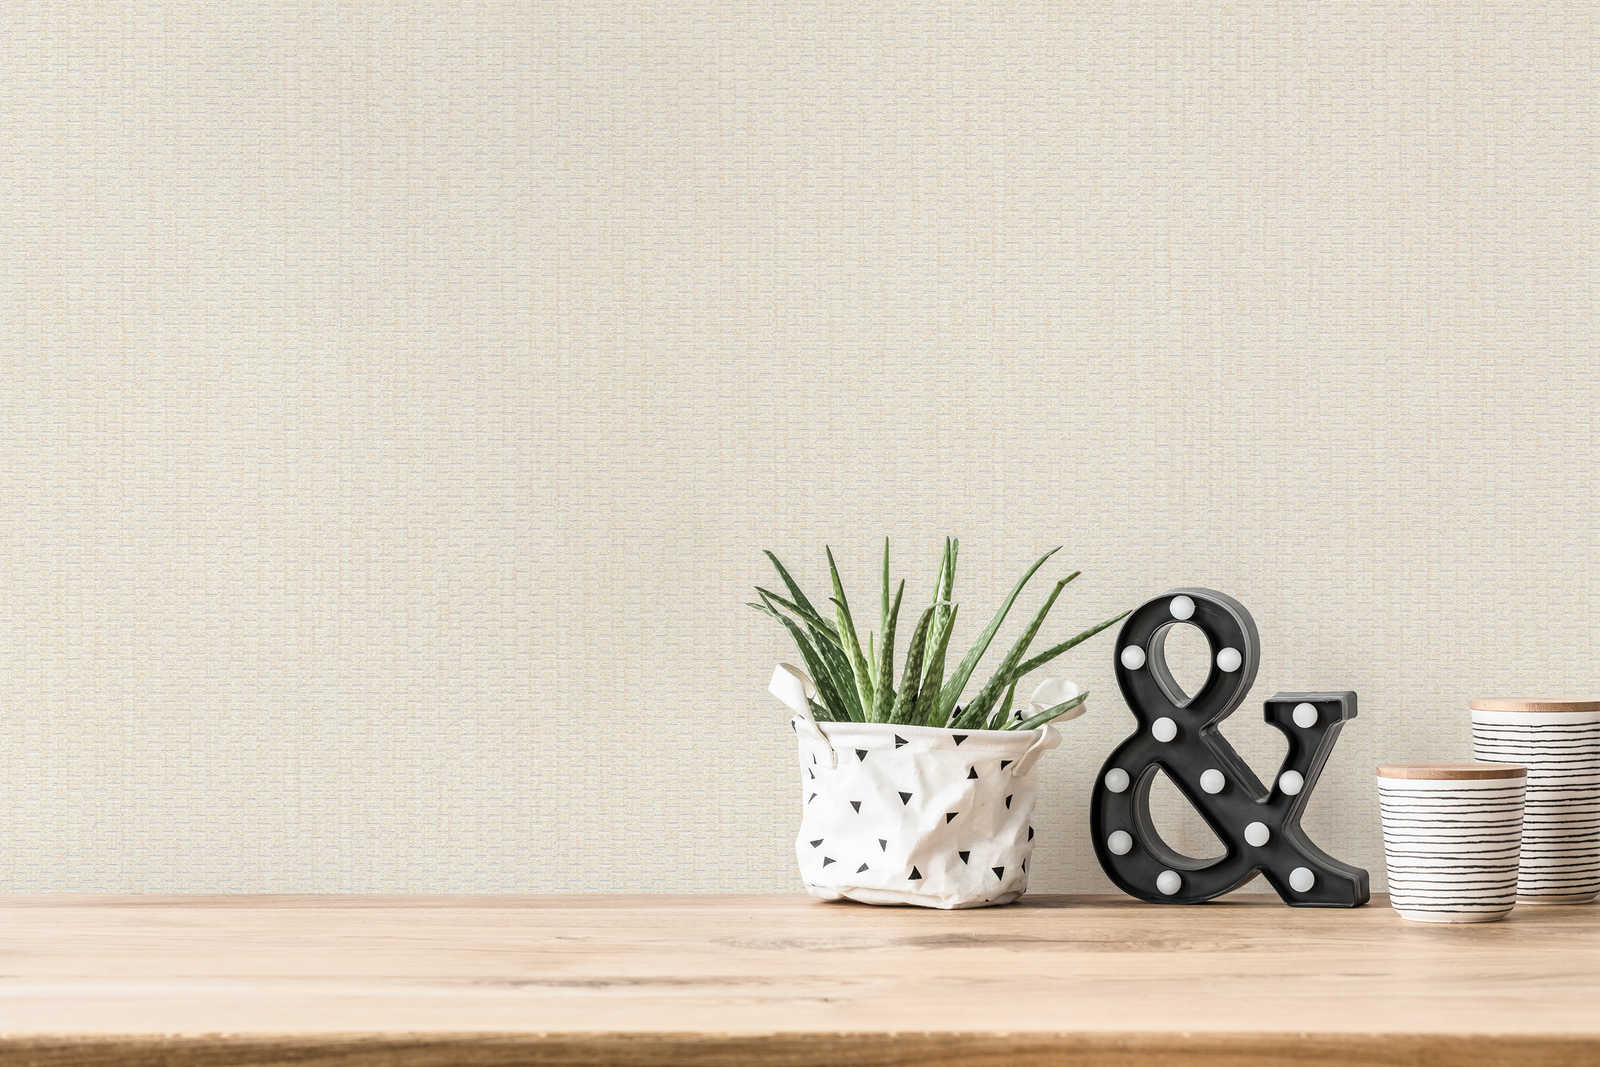             Wallpaper with raffia mats design - cream, white
        